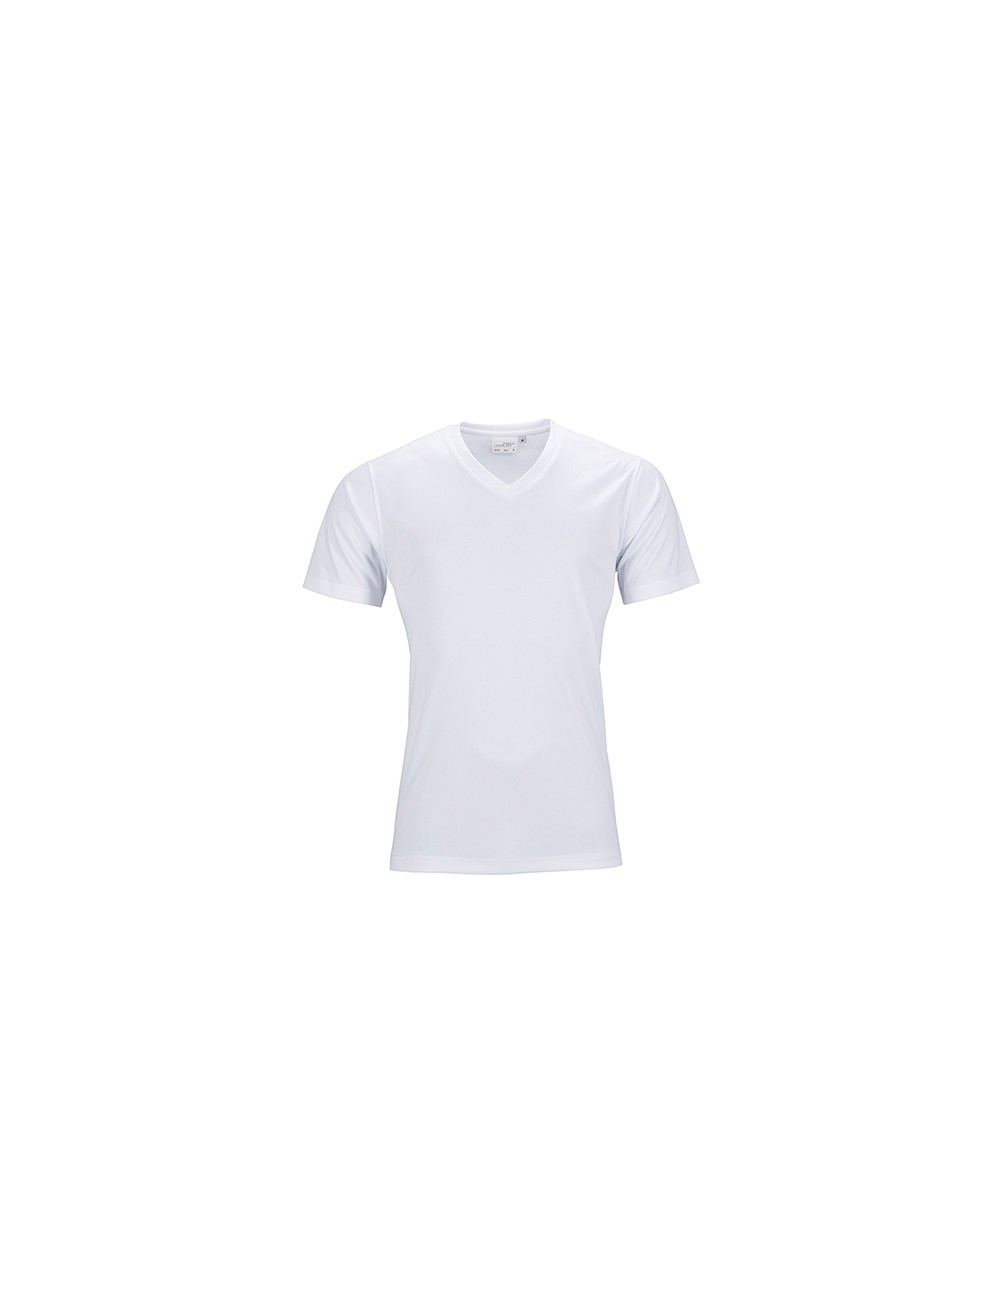 Men’s Active T-Shirt, V-Neck, Farbe White - 1